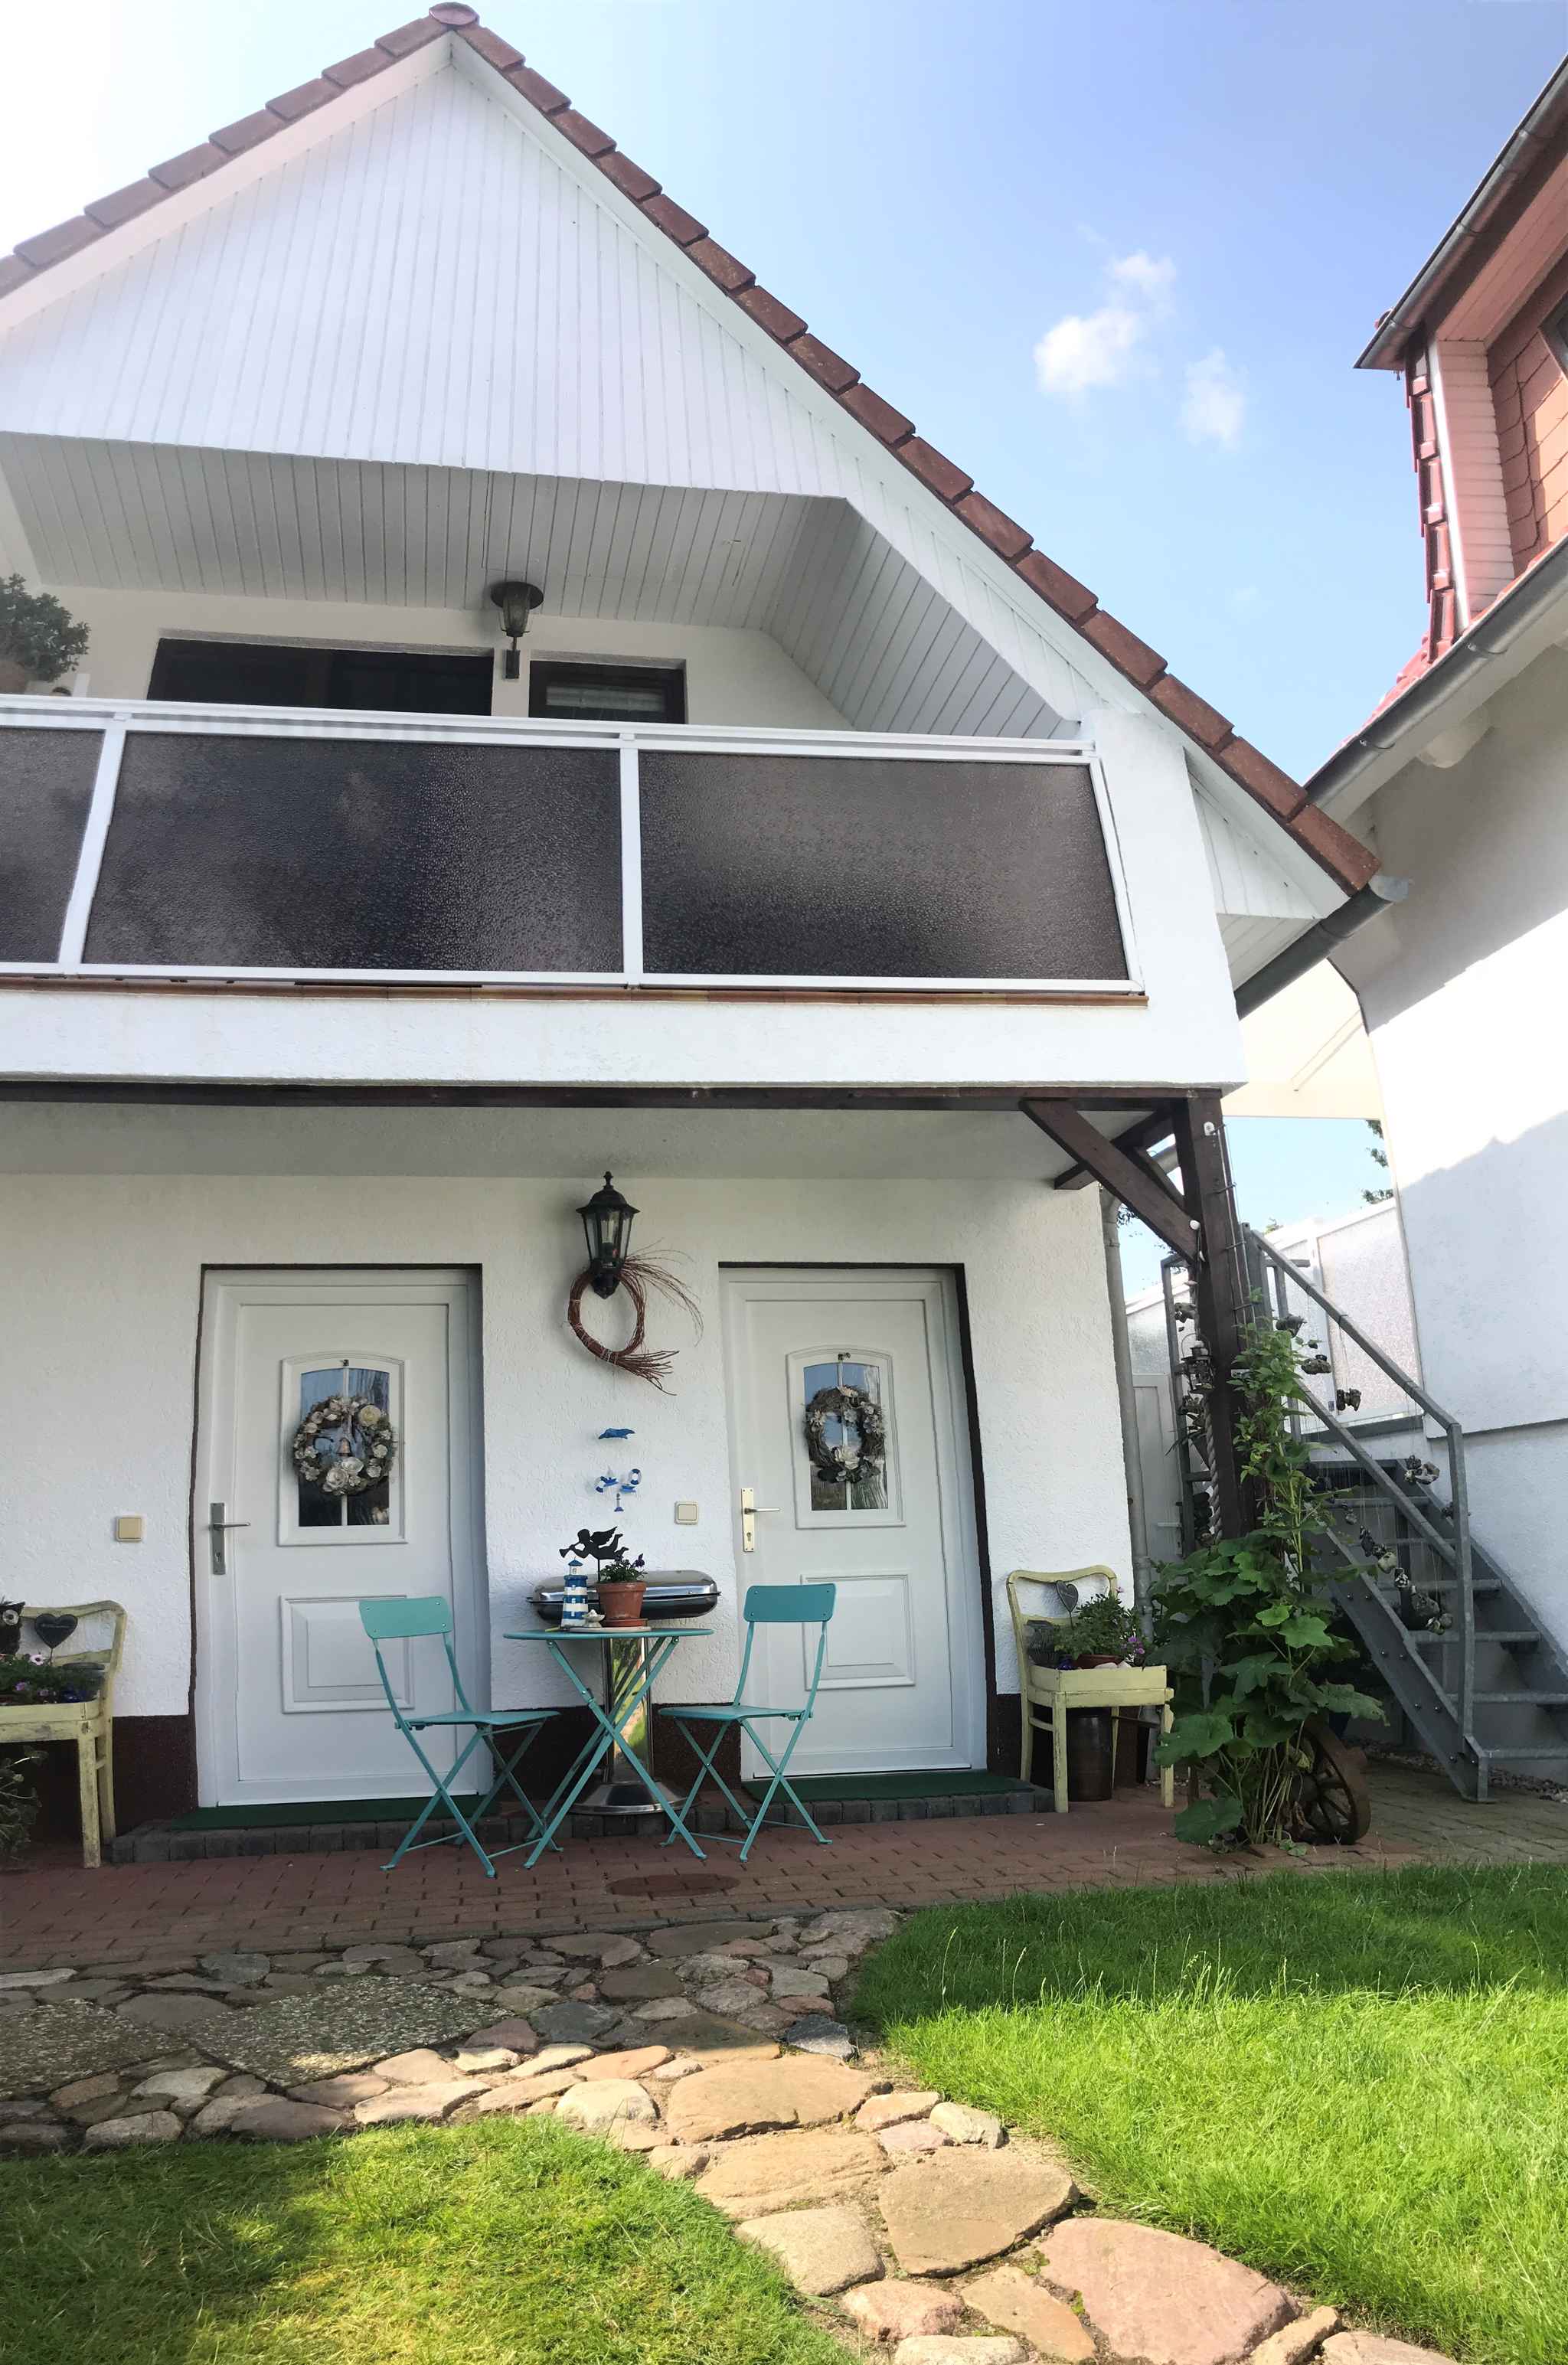 Ferienhaus mit Balkon, Terrasse und Garten (809457), Groß Kordshagen, Stralsund, Mecklenburg-Vorpommern, Deutschland, Bild 2